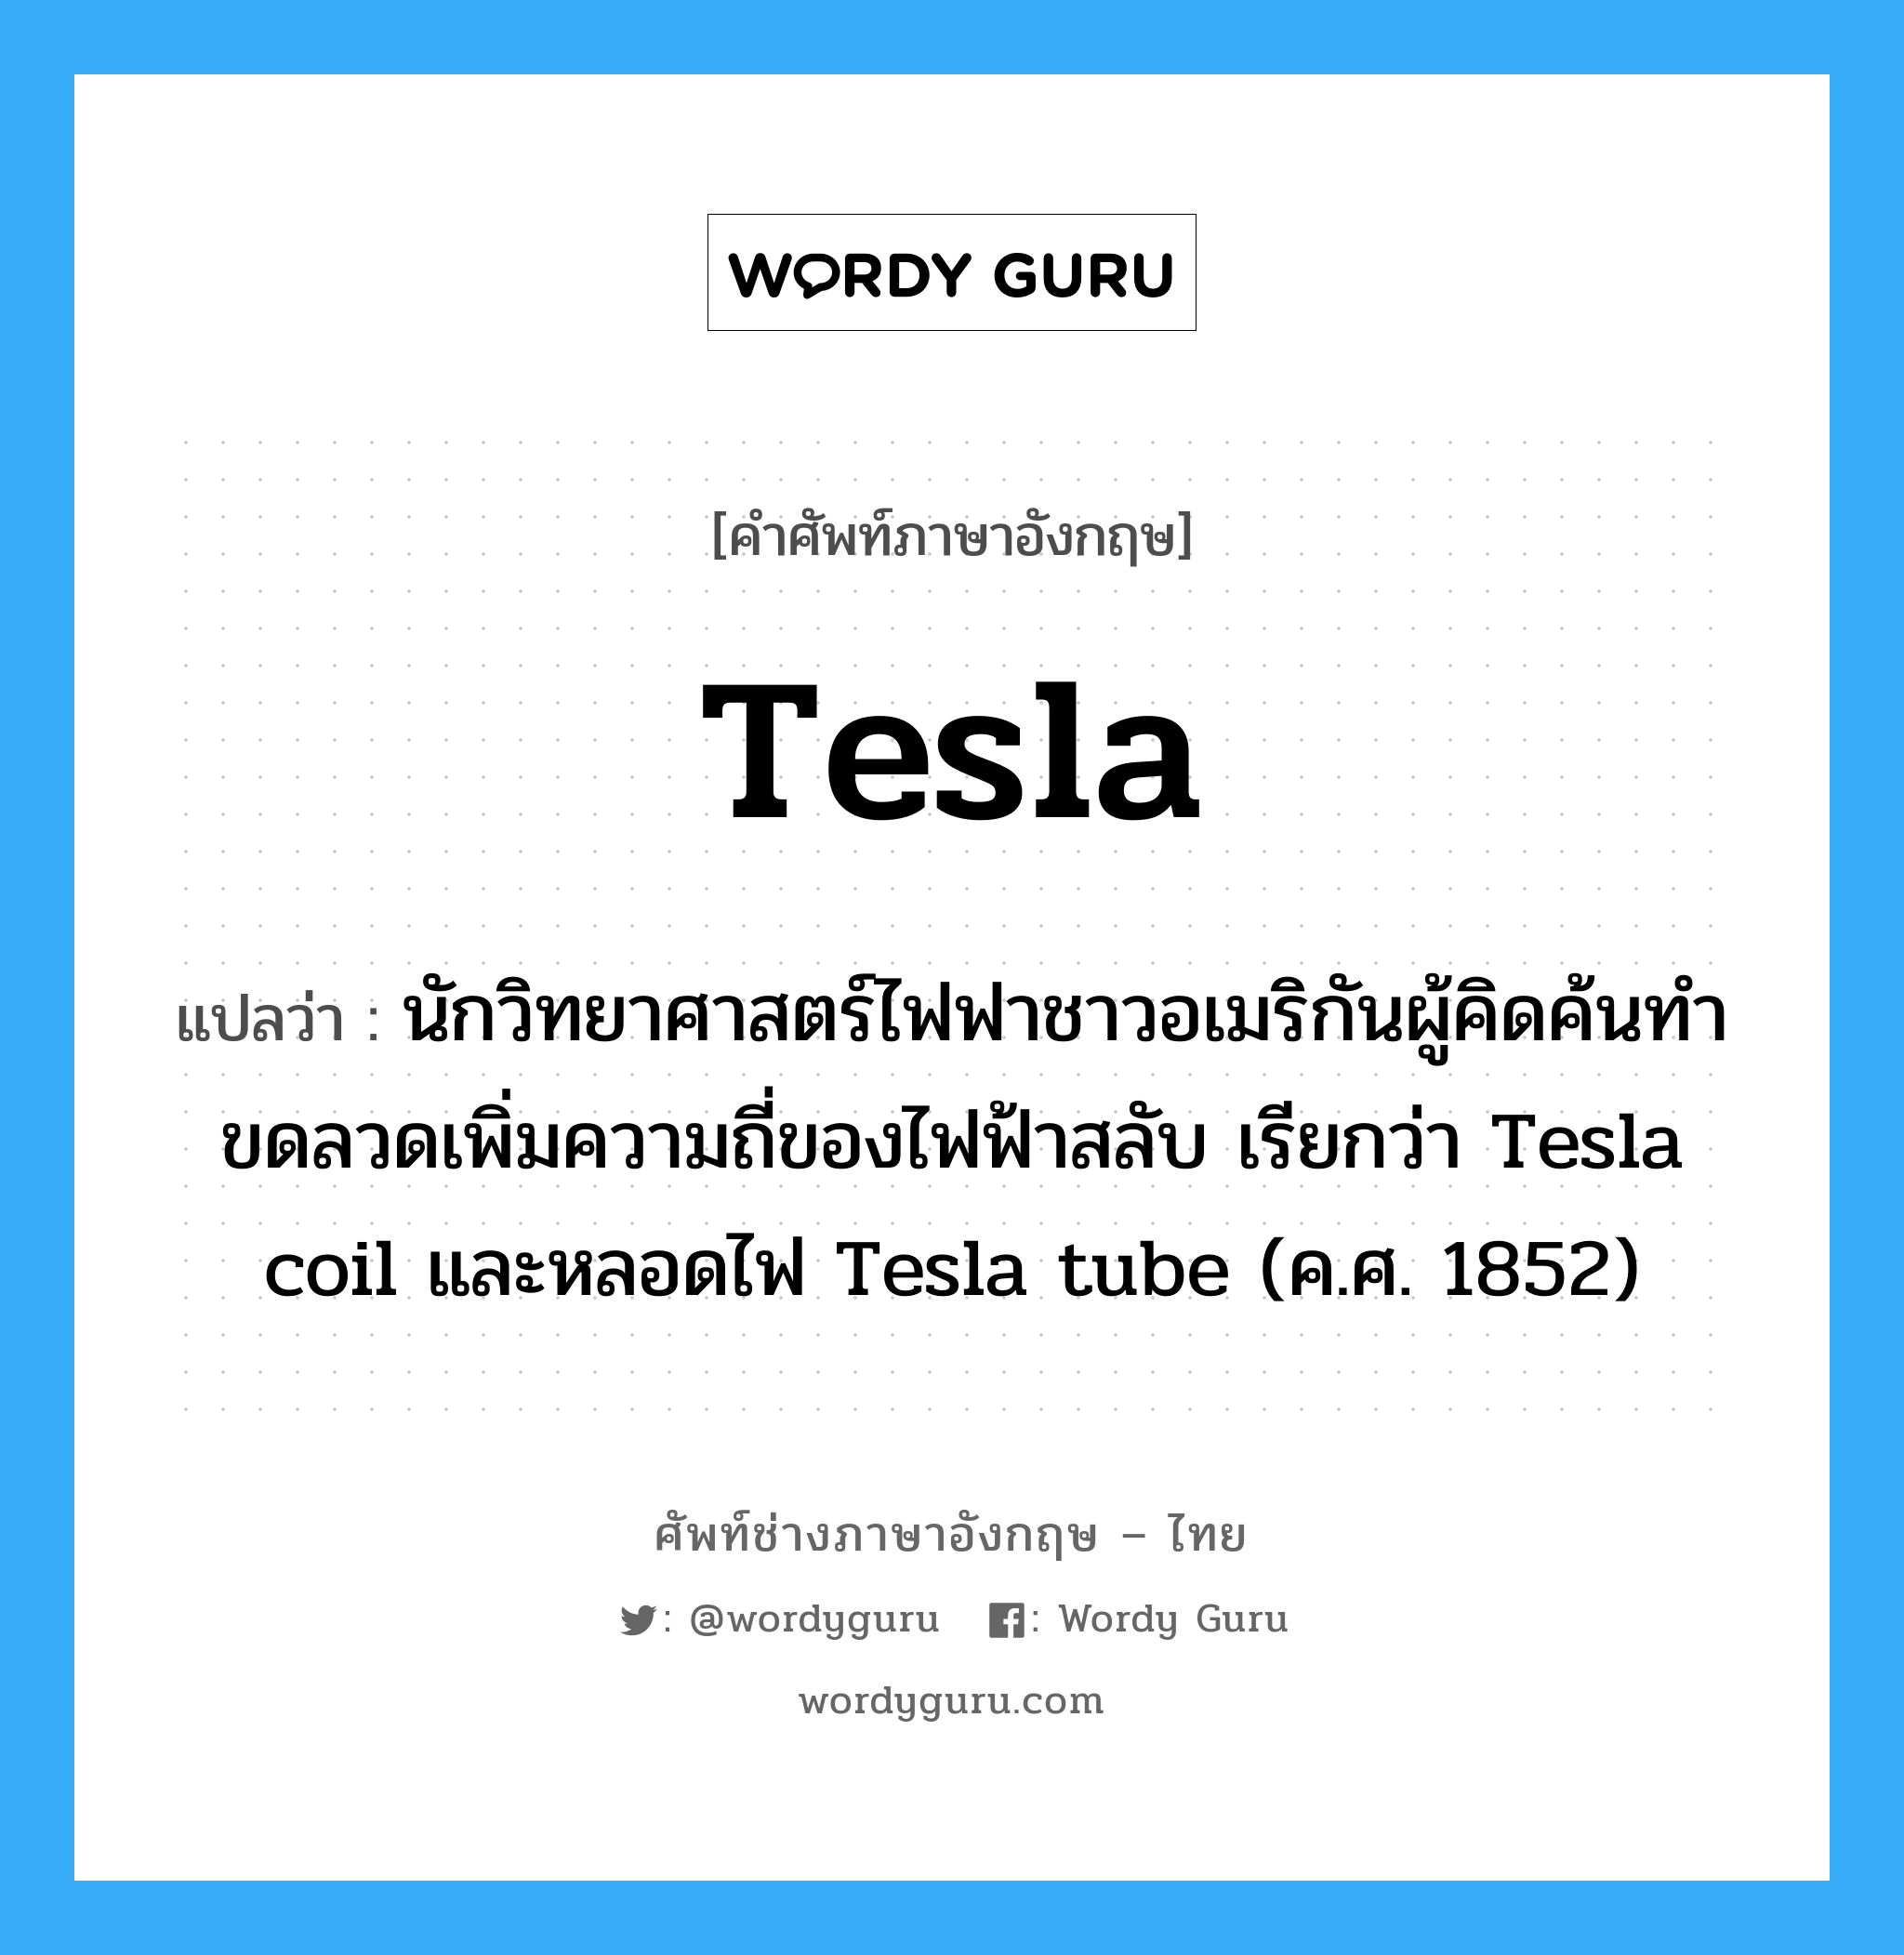 นักวิทยาศาสตร์ไฟฟาชาวอเมริกันผู้คิดค้นทำขดลวดเพิ่มความถี่ของไฟฟ้าสลับ เรียกว่า Tesla coil และหลอดไฟ Tesla tube (ค.ศ. 1852) ภาษาอังกฤษ?, คำศัพท์ช่างภาษาอังกฤษ - ไทย นักวิทยาศาสตร์ไฟฟาชาวอเมริกันผู้คิดค้นทำขดลวดเพิ่มความถี่ของไฟฟ้าสลับ เรียกว่า Tesla coil และหลอดไฟ Tesla tube (ค.ศ. 1852) คำศัพท์ภาษาอังกฤษ นักวิทยาศาสตร์ไฟฟาชาวอเมริกันผู้คิดค้นทำขดลวดเพิ่มความถี่ของไฟฟ้าสลับ เรียกว่า Tesla coil และหลอดไฟ Tesla tube (ค.ศ. 1852) แปลว่า Tesla